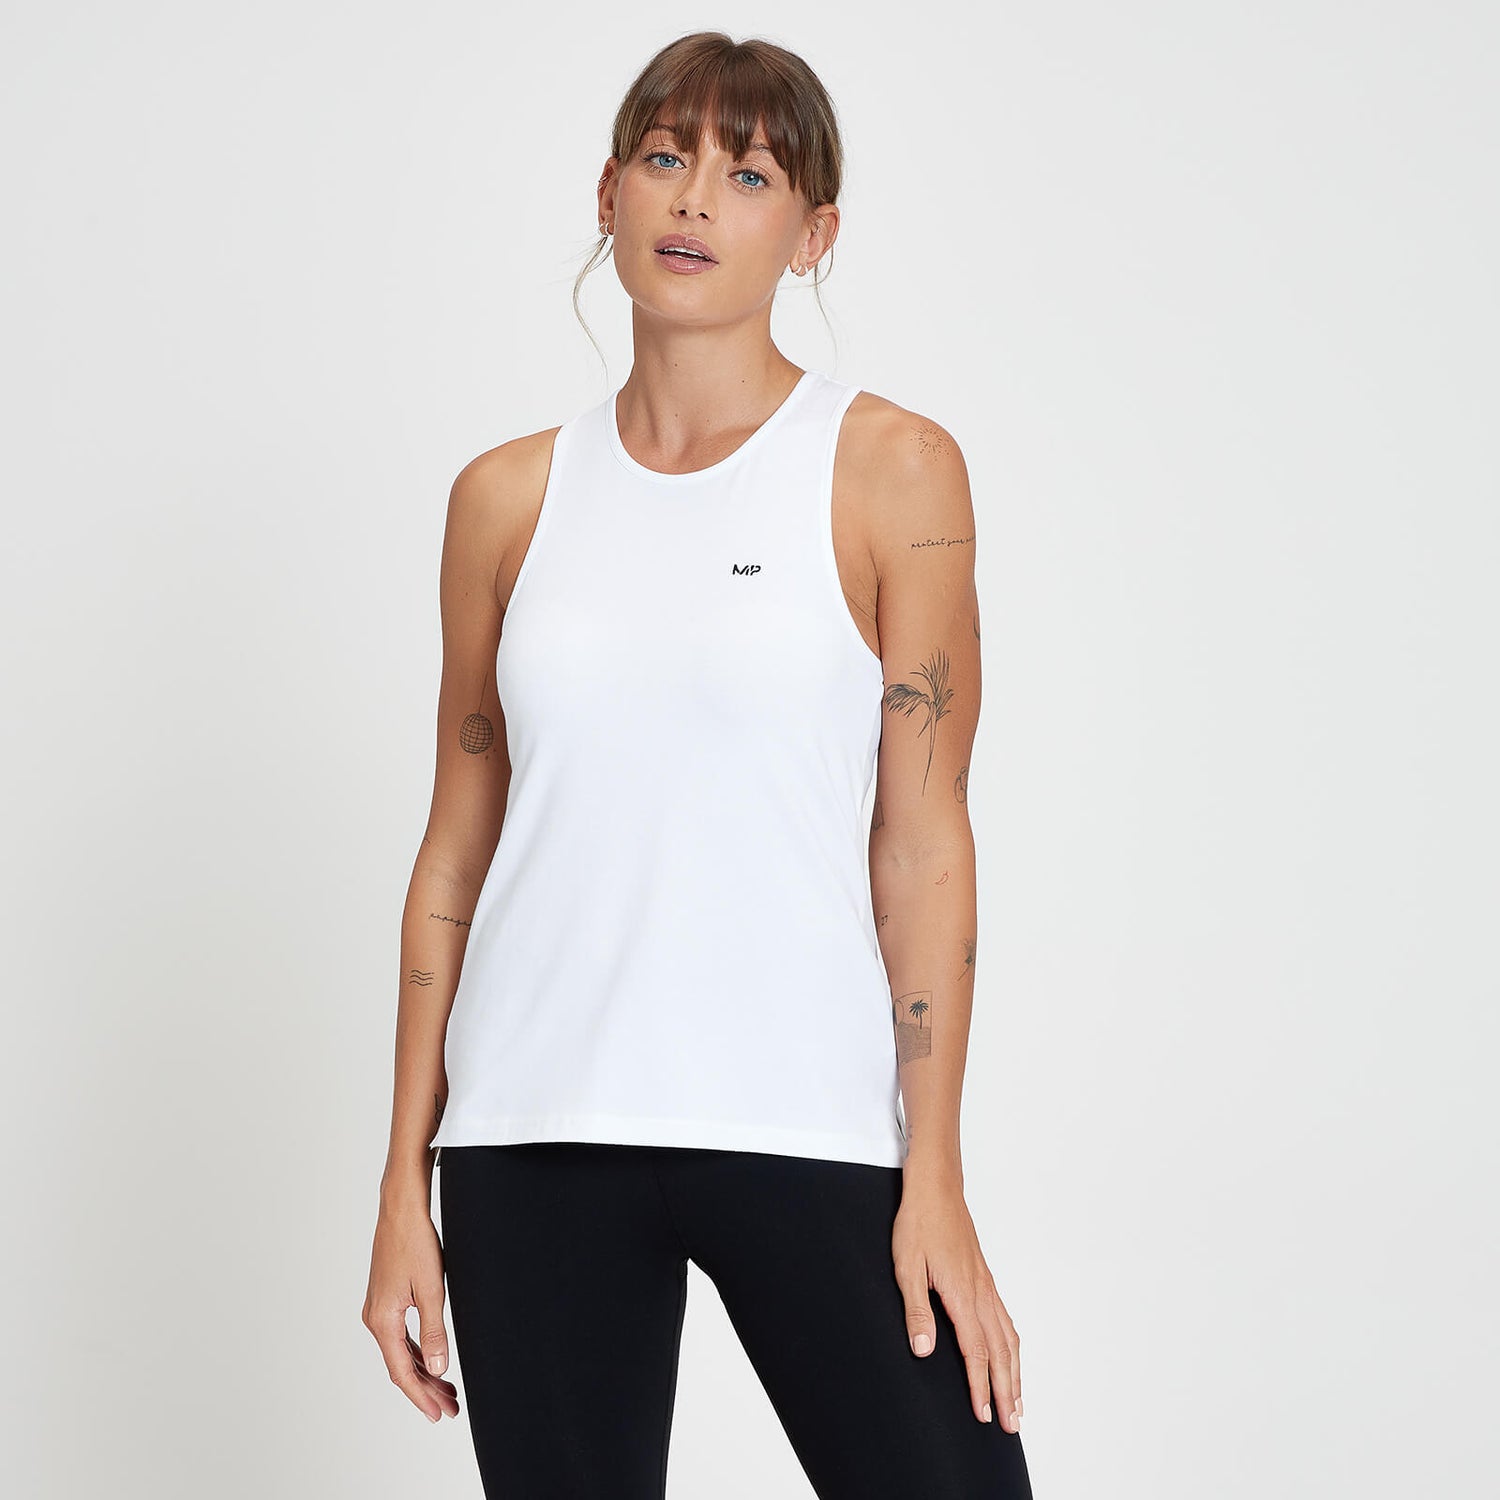 Camiseta sin mangas con espalda nadadora Composure para mujer de MP - Blanco - XXS